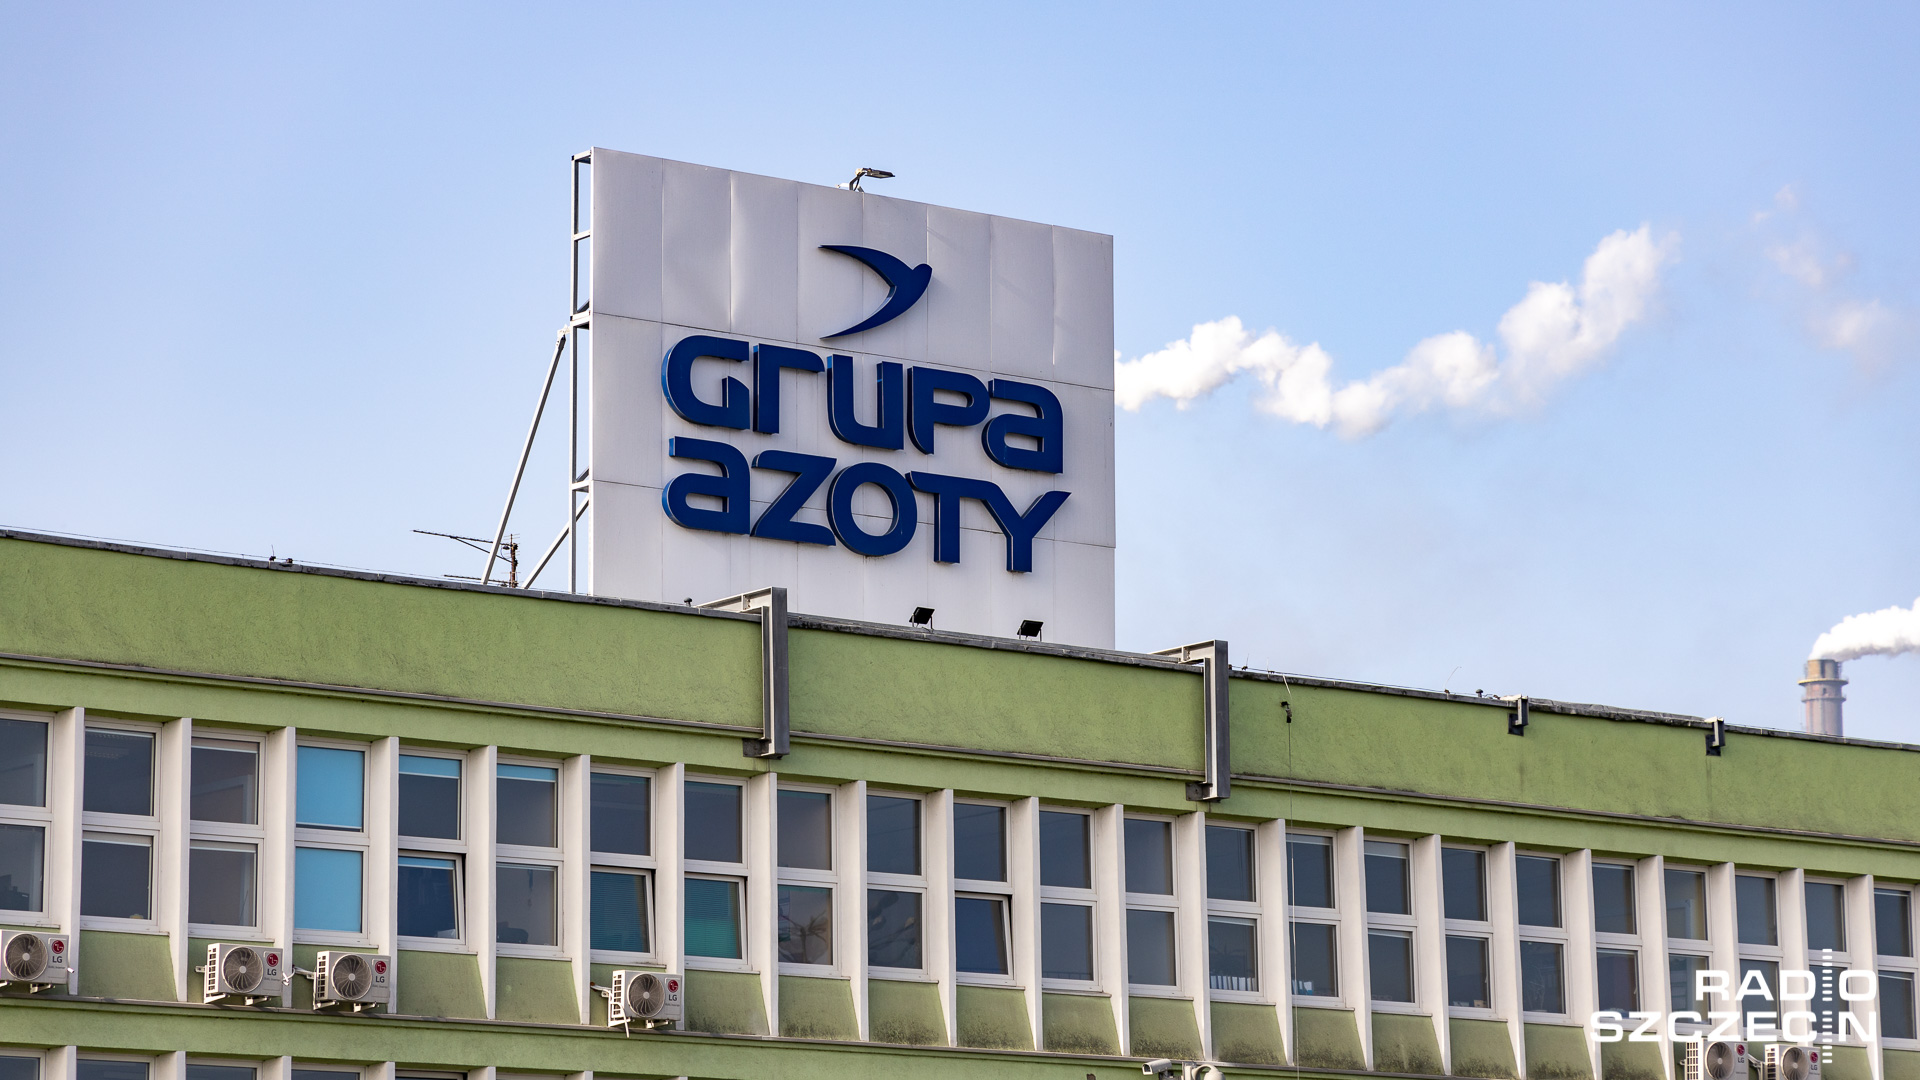 10 miliardów złotych - z takim długiem nowy zarząd Grupy Azoty zastał firmę, która w branży nawozowo-chemicznej należy do największych w Europie, a pod względem produkcji nawozów azotowych i wieloskładnikowych jest drugą w Unii.